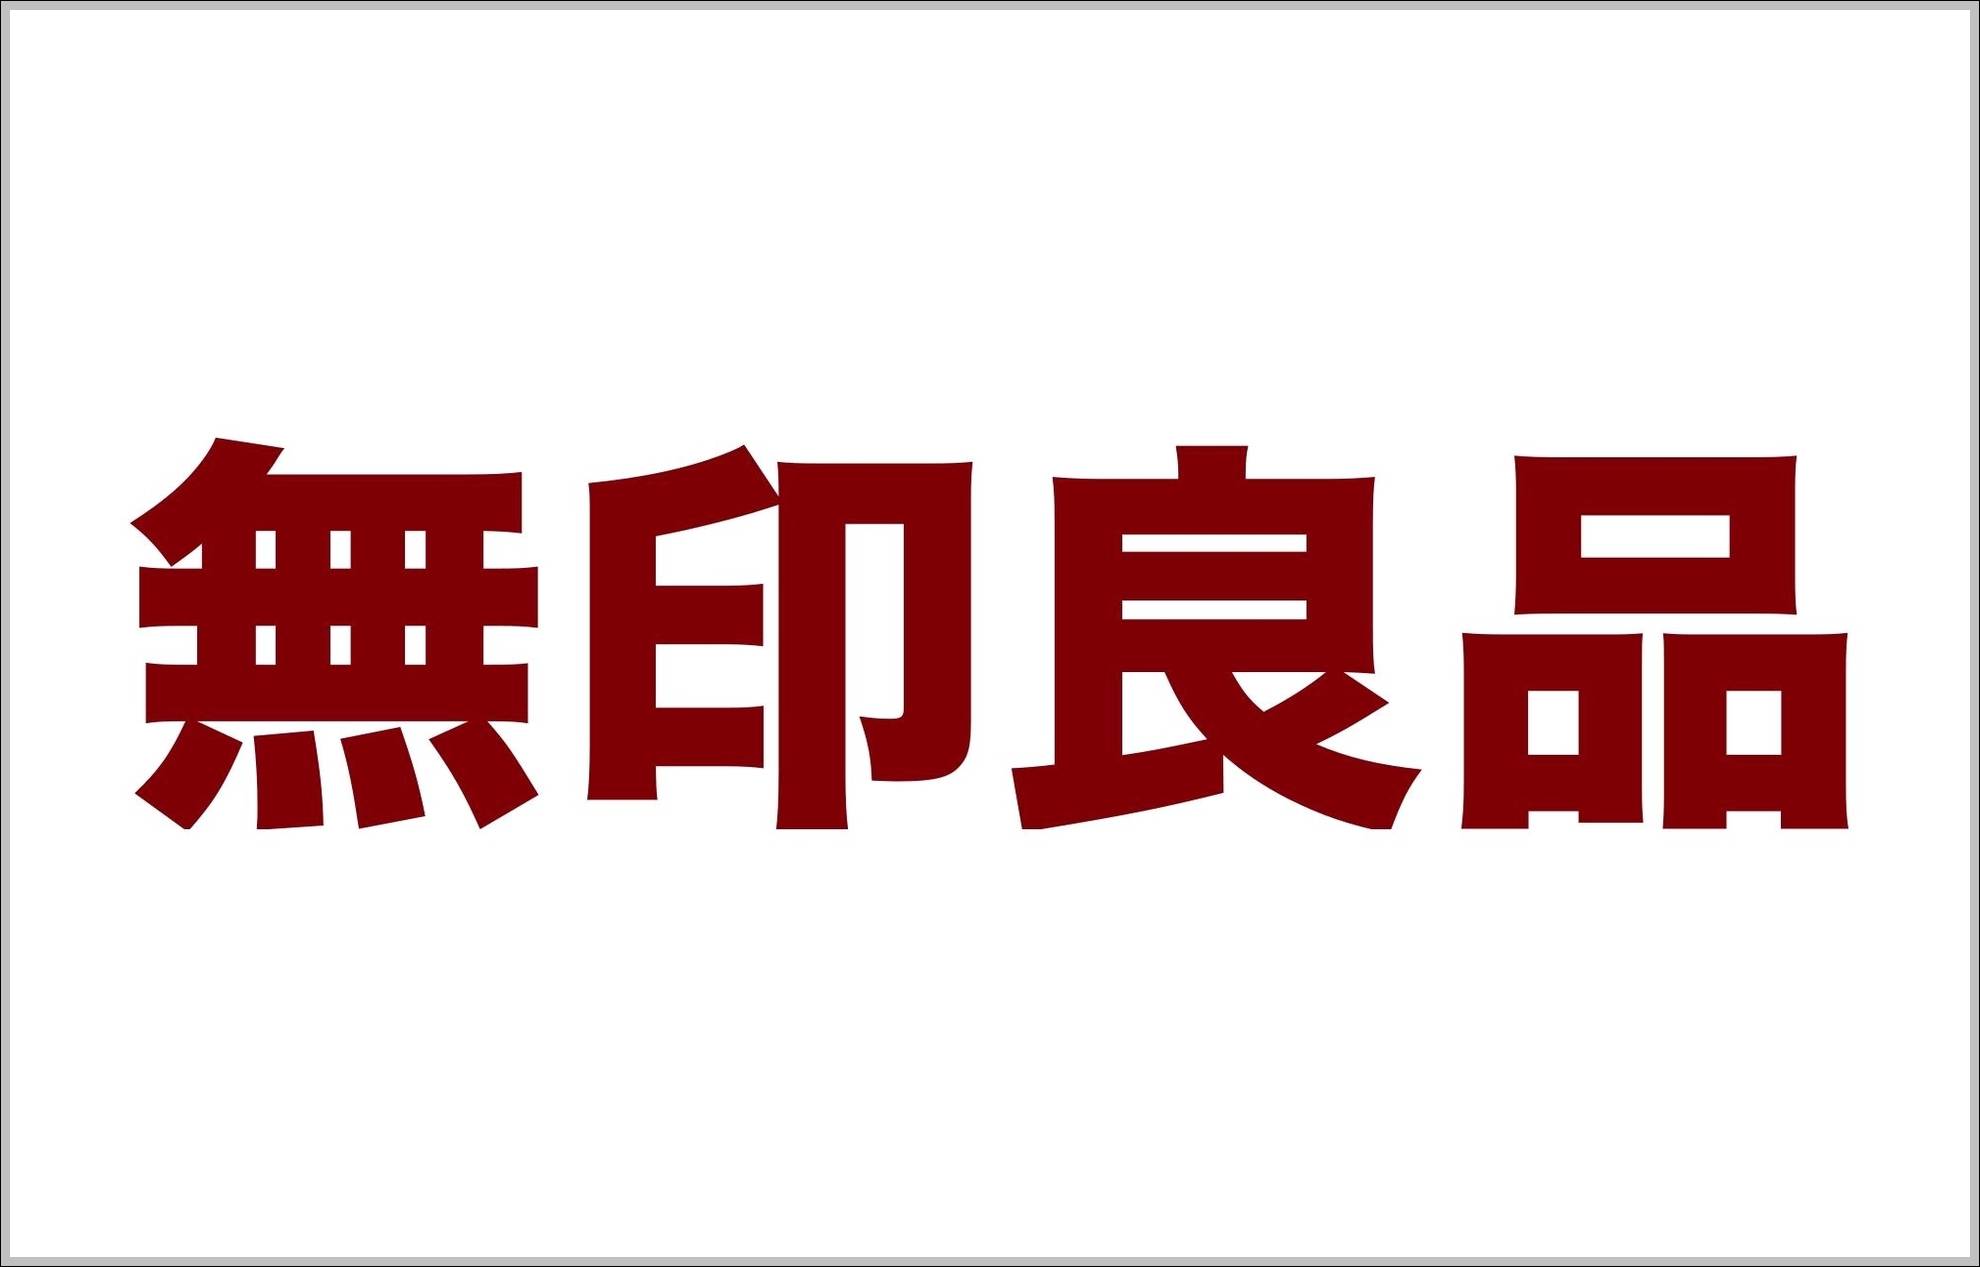 Muji name logo